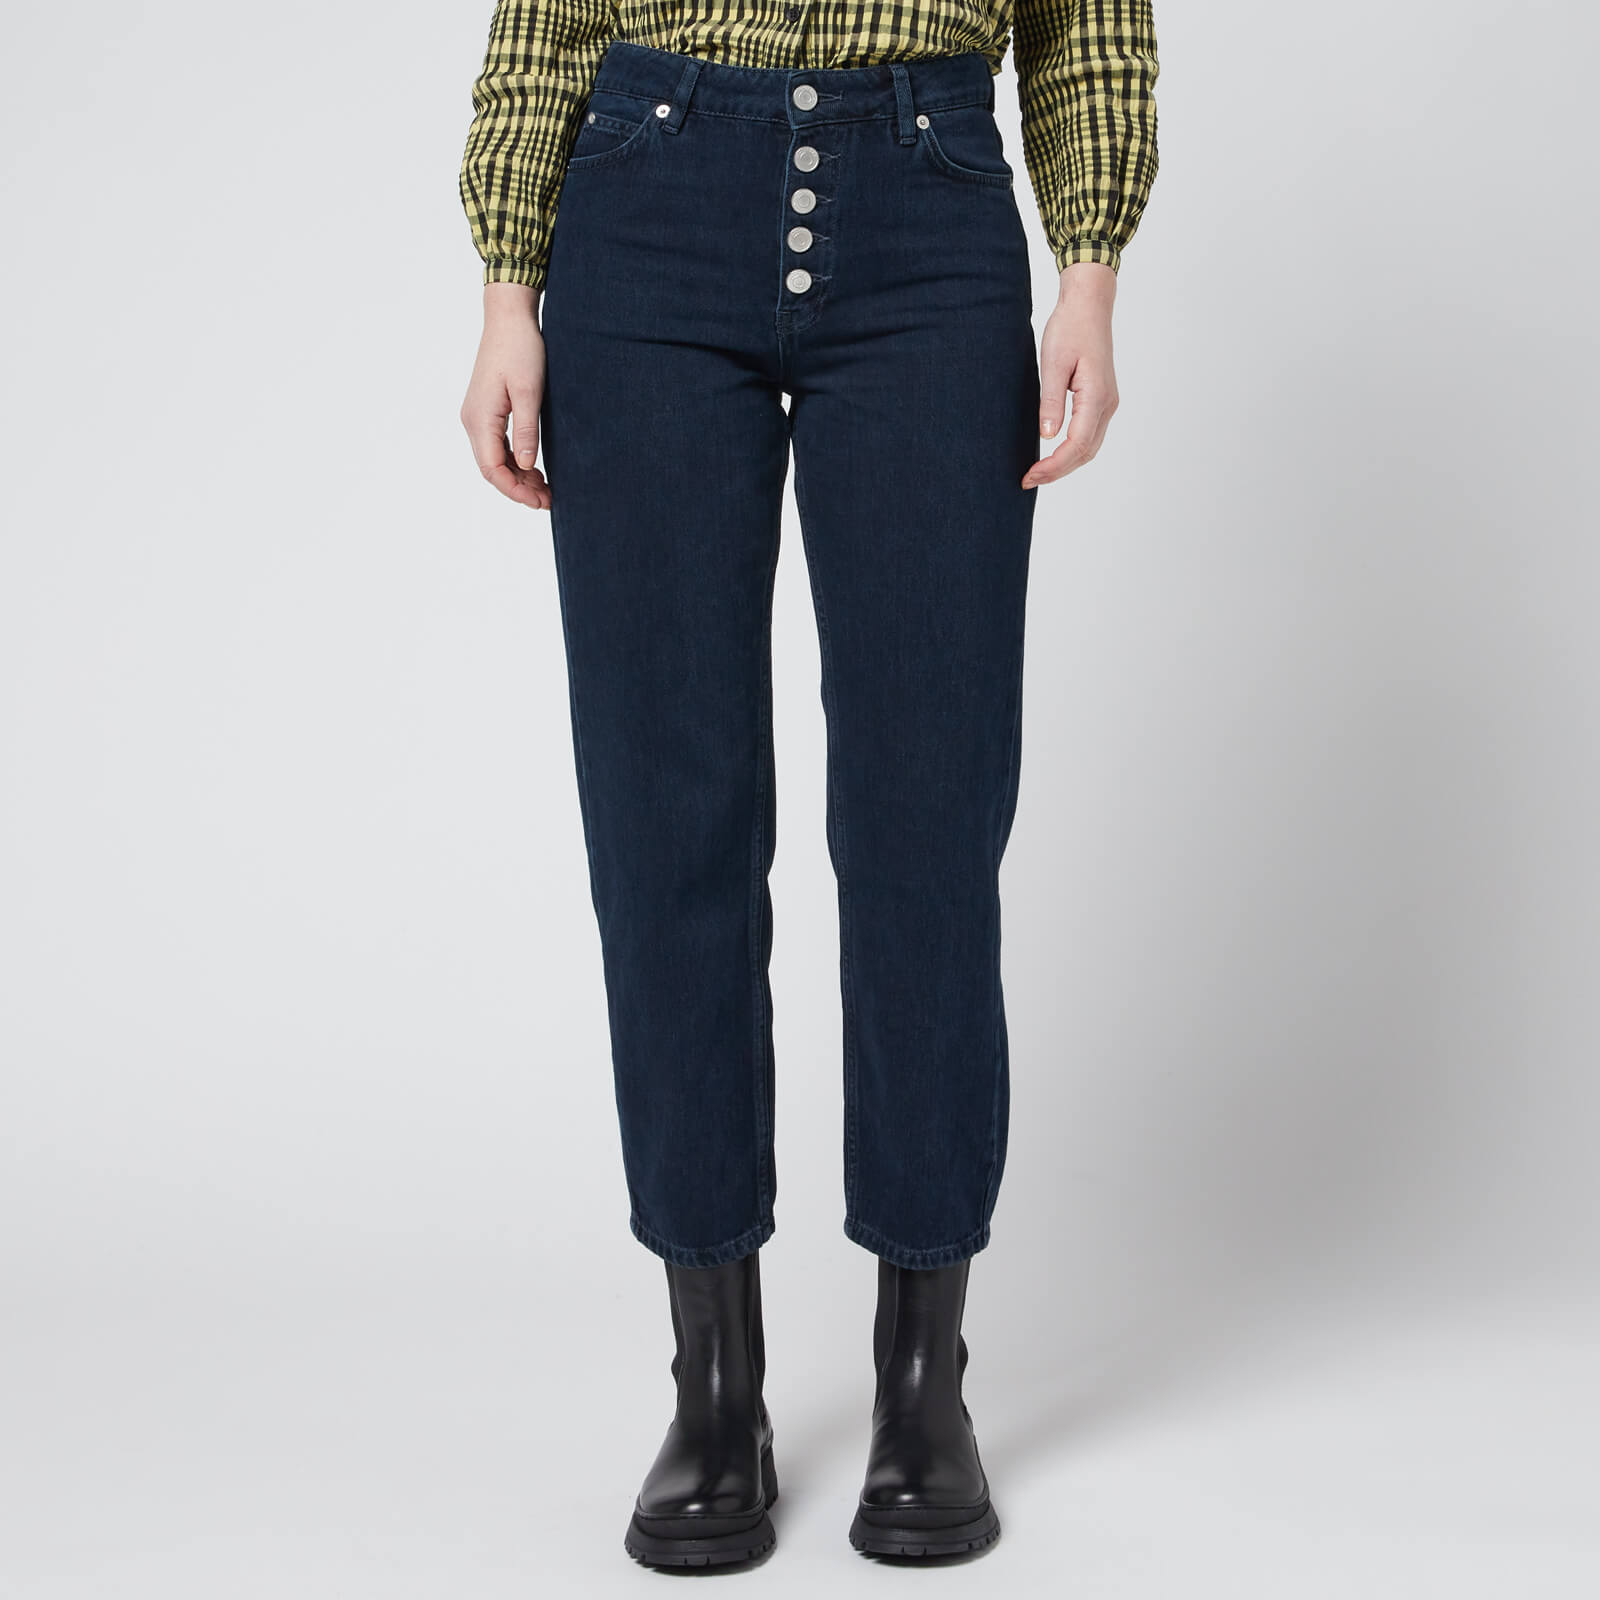 Whistles Women's Hollie Button Front Jeans - Dark Denim - UK 27